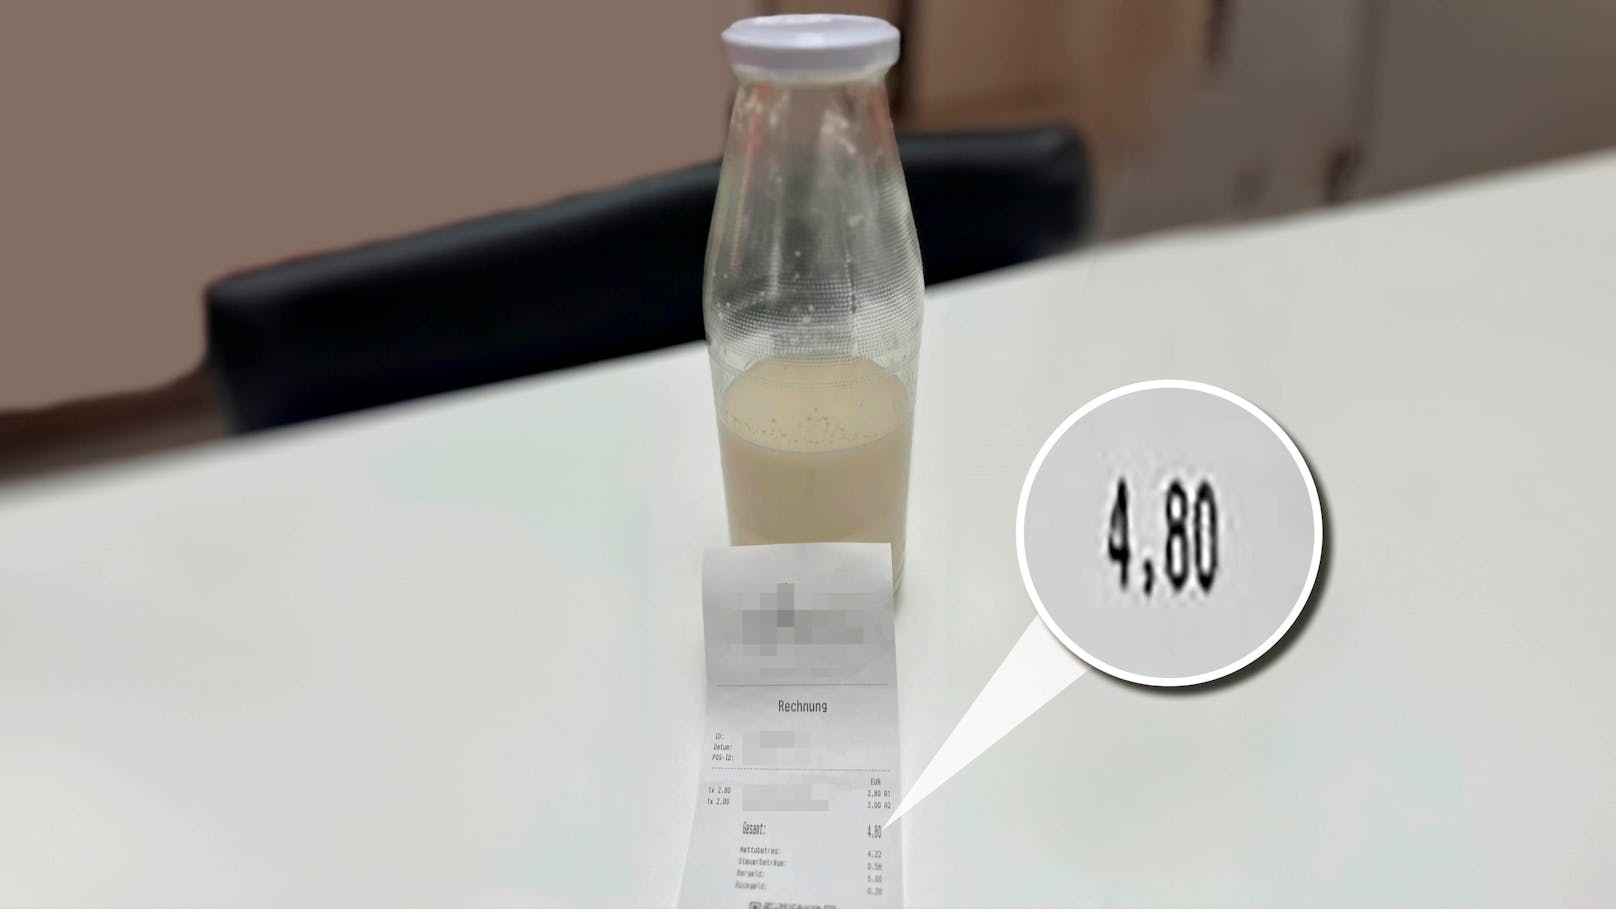 Kunde sauer – Bäcker will 4,80 Euro für 1 Liter Milch